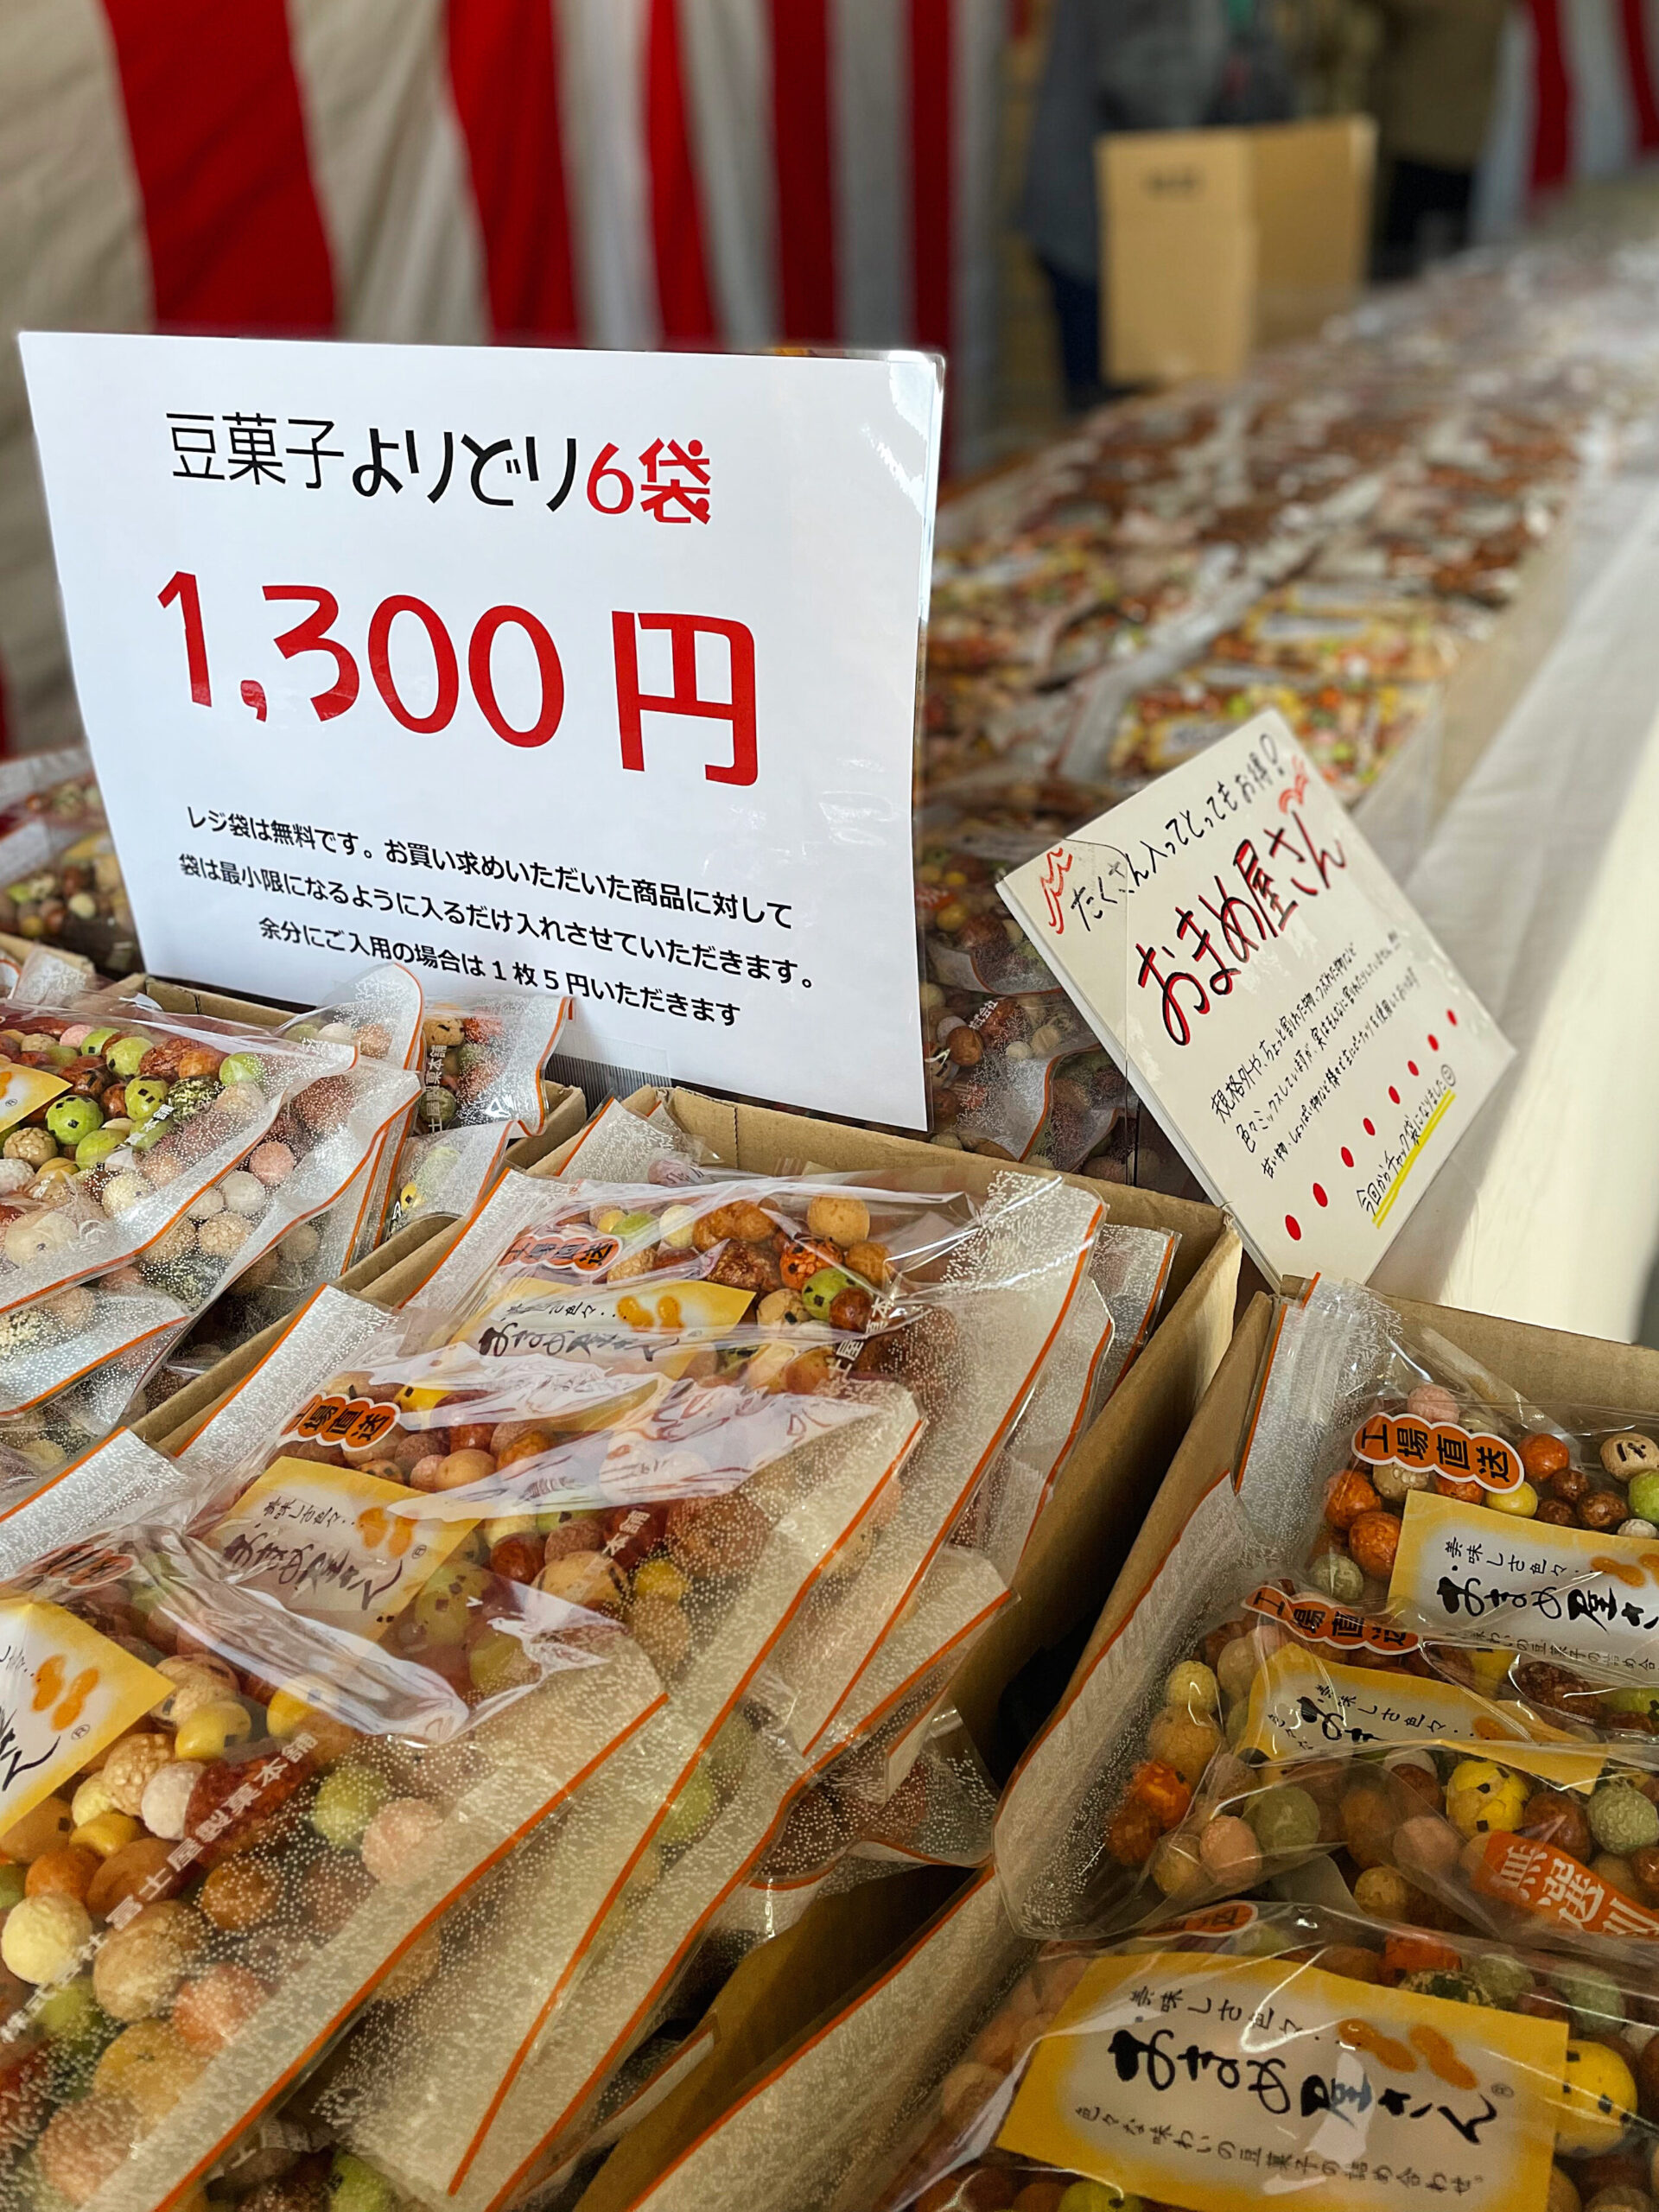 冨士屋製菓本舗直売セールの写真